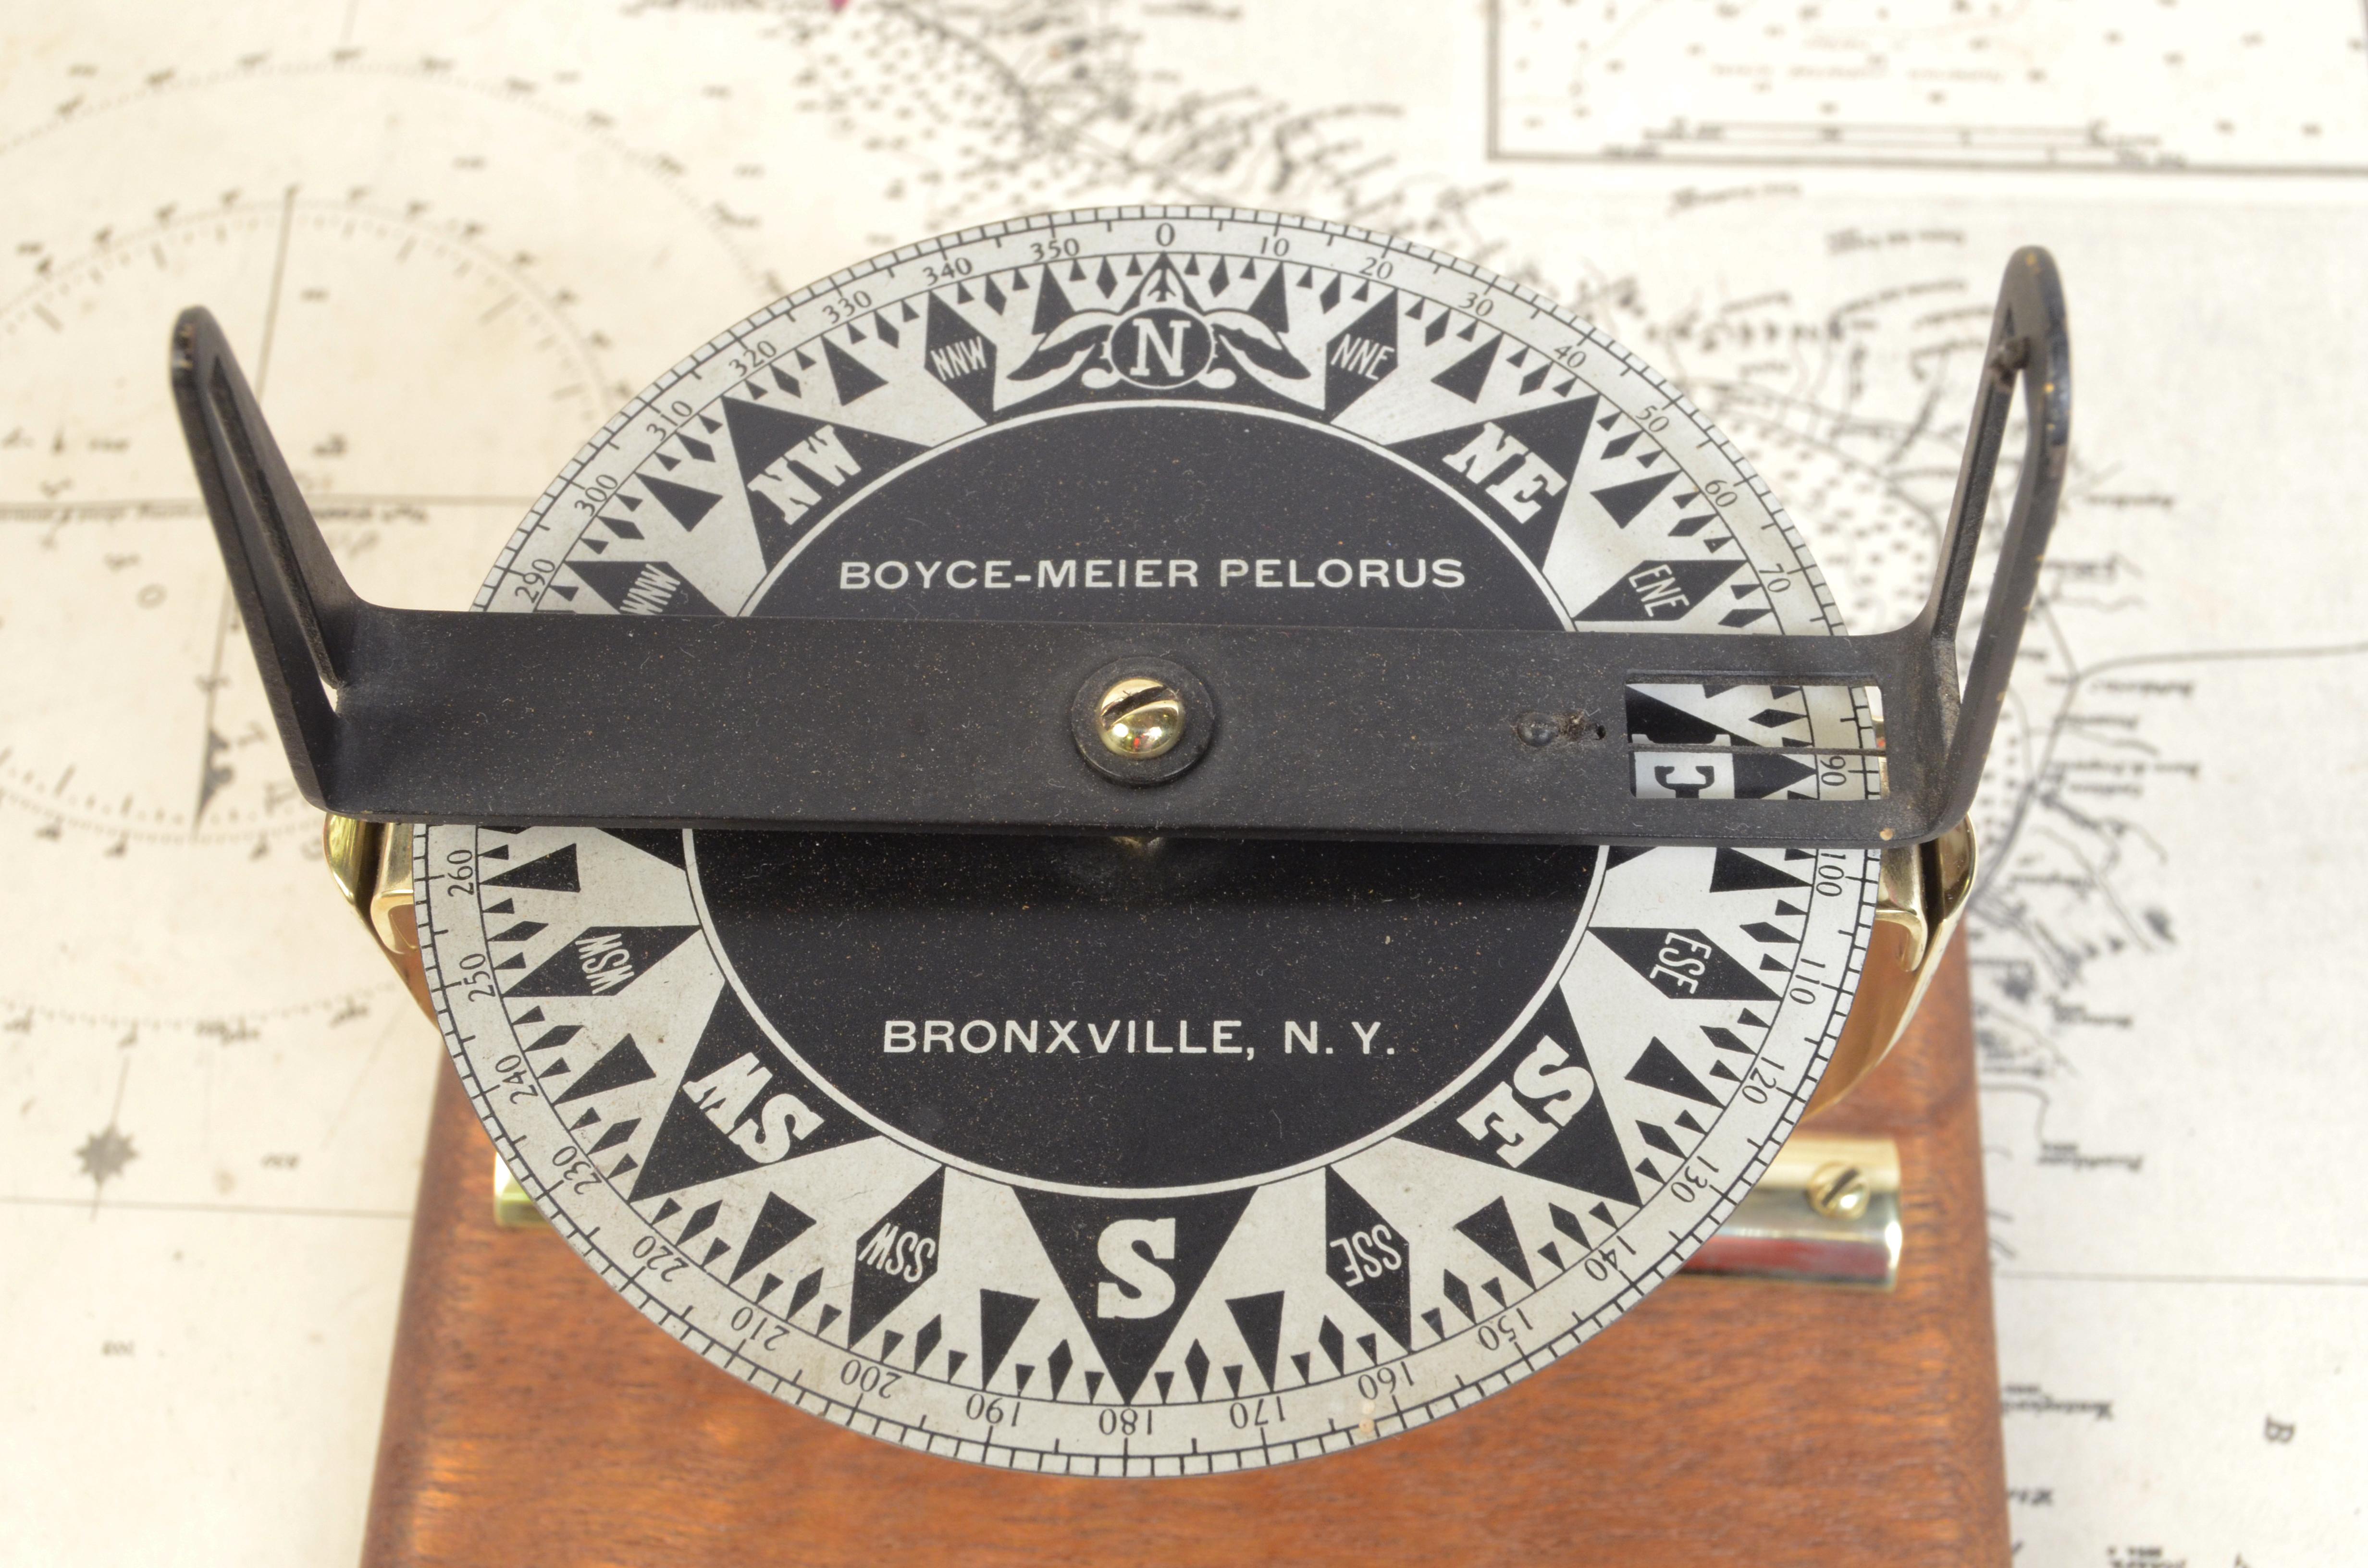 Antike kleine Messing Pelorus, unterzeichnet Boyce-Meyer Pelorus Bronxonville N.Y., in den späten des XIX Jahrhunderts gemacht. Es verfügt über ein Visiersystem mit einer Kompasskarte mit acht Windrichtungen und goniometrischem Kreis. Der Pelorus